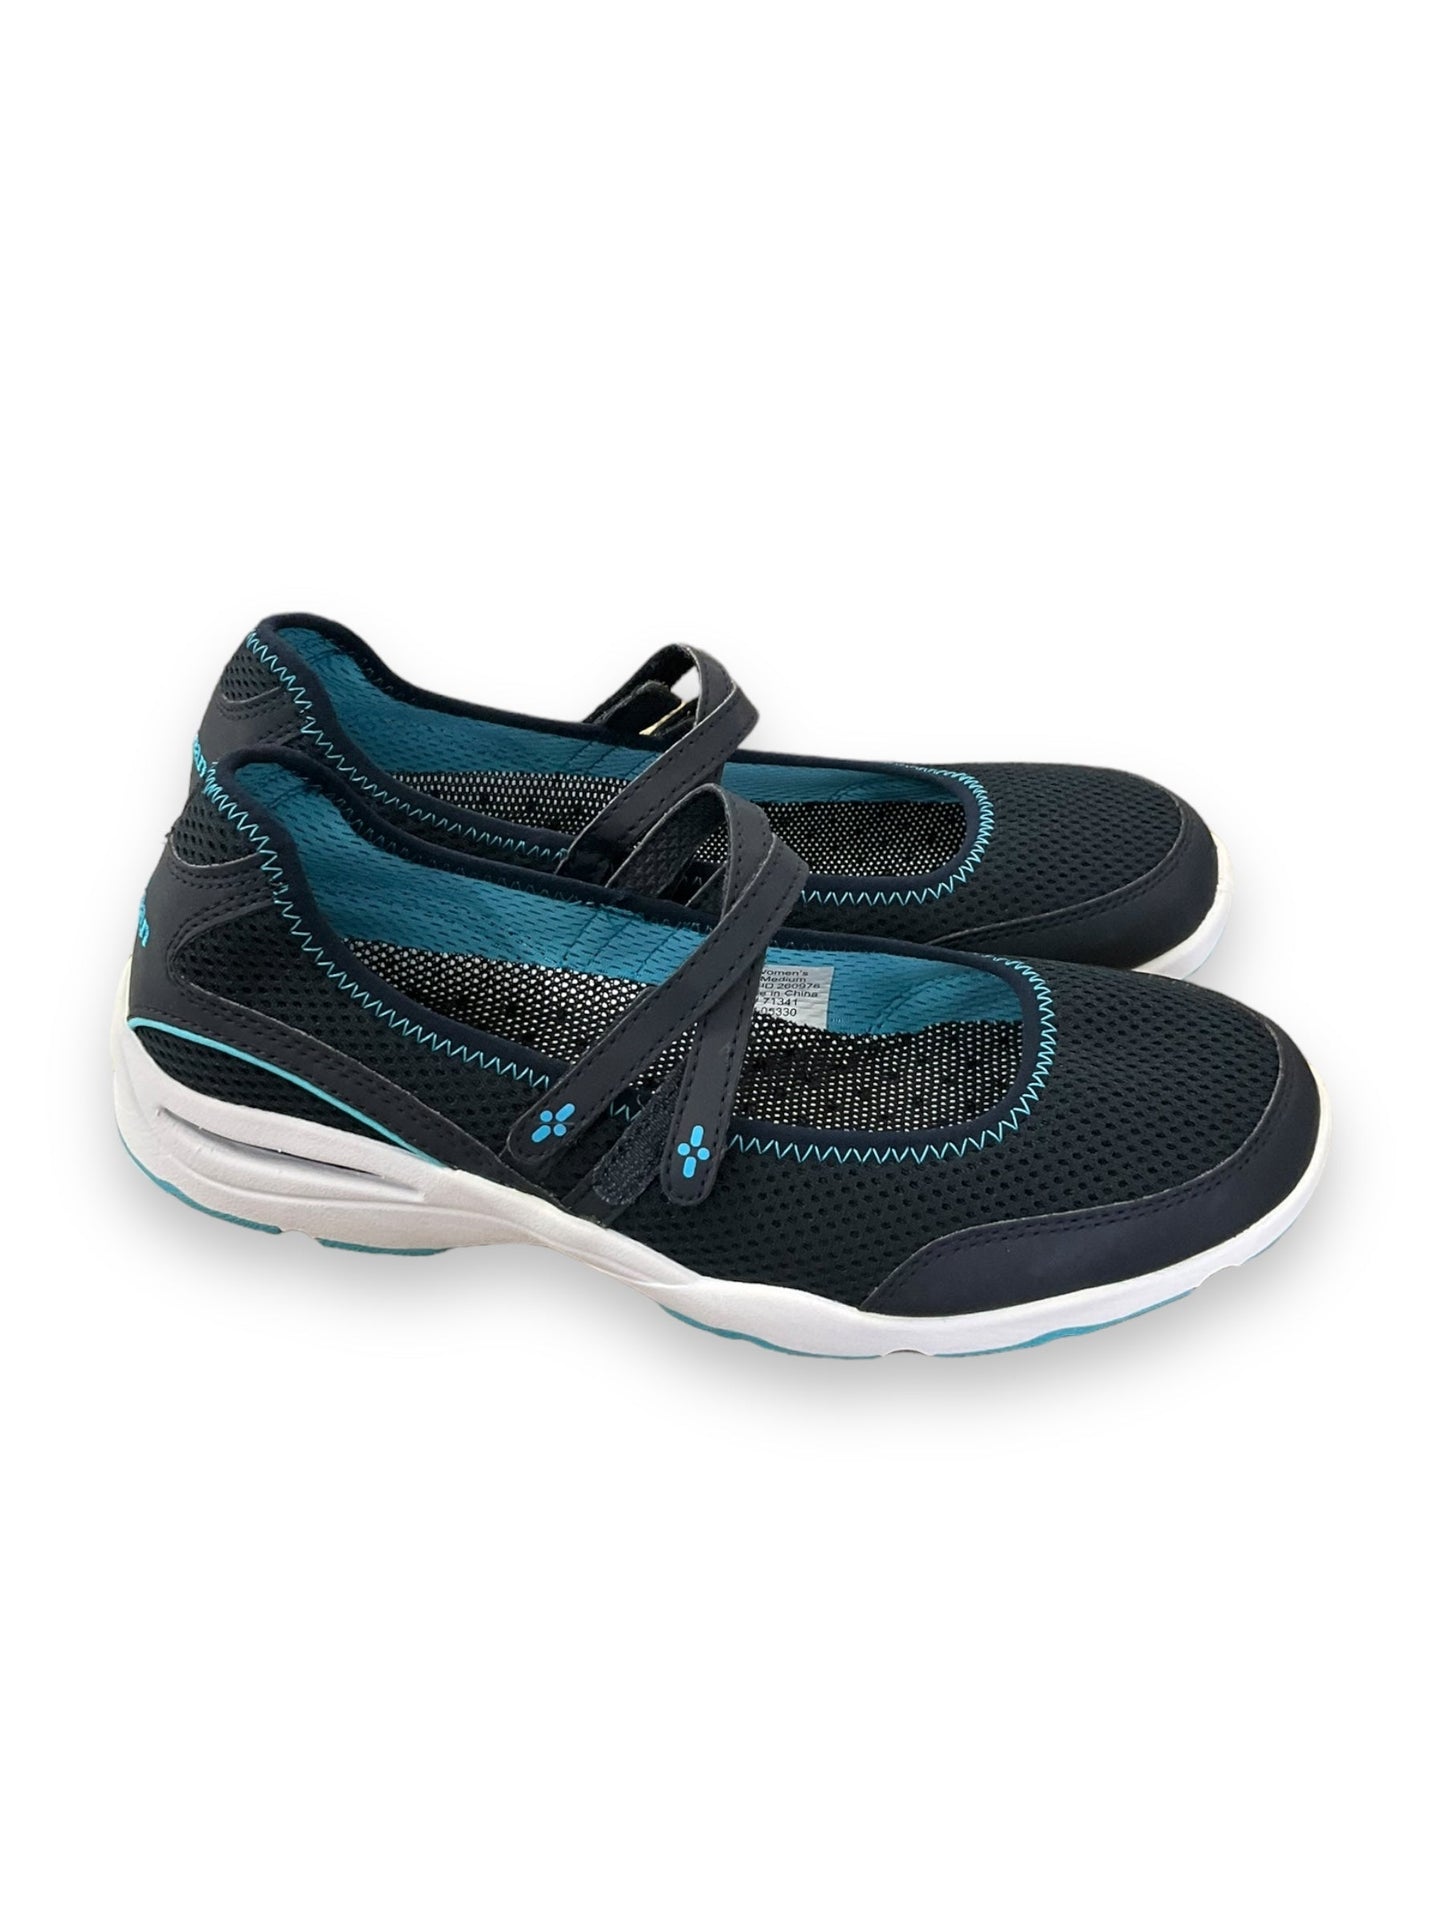 Blue Shoes Flats L.l. Bean, Size 9